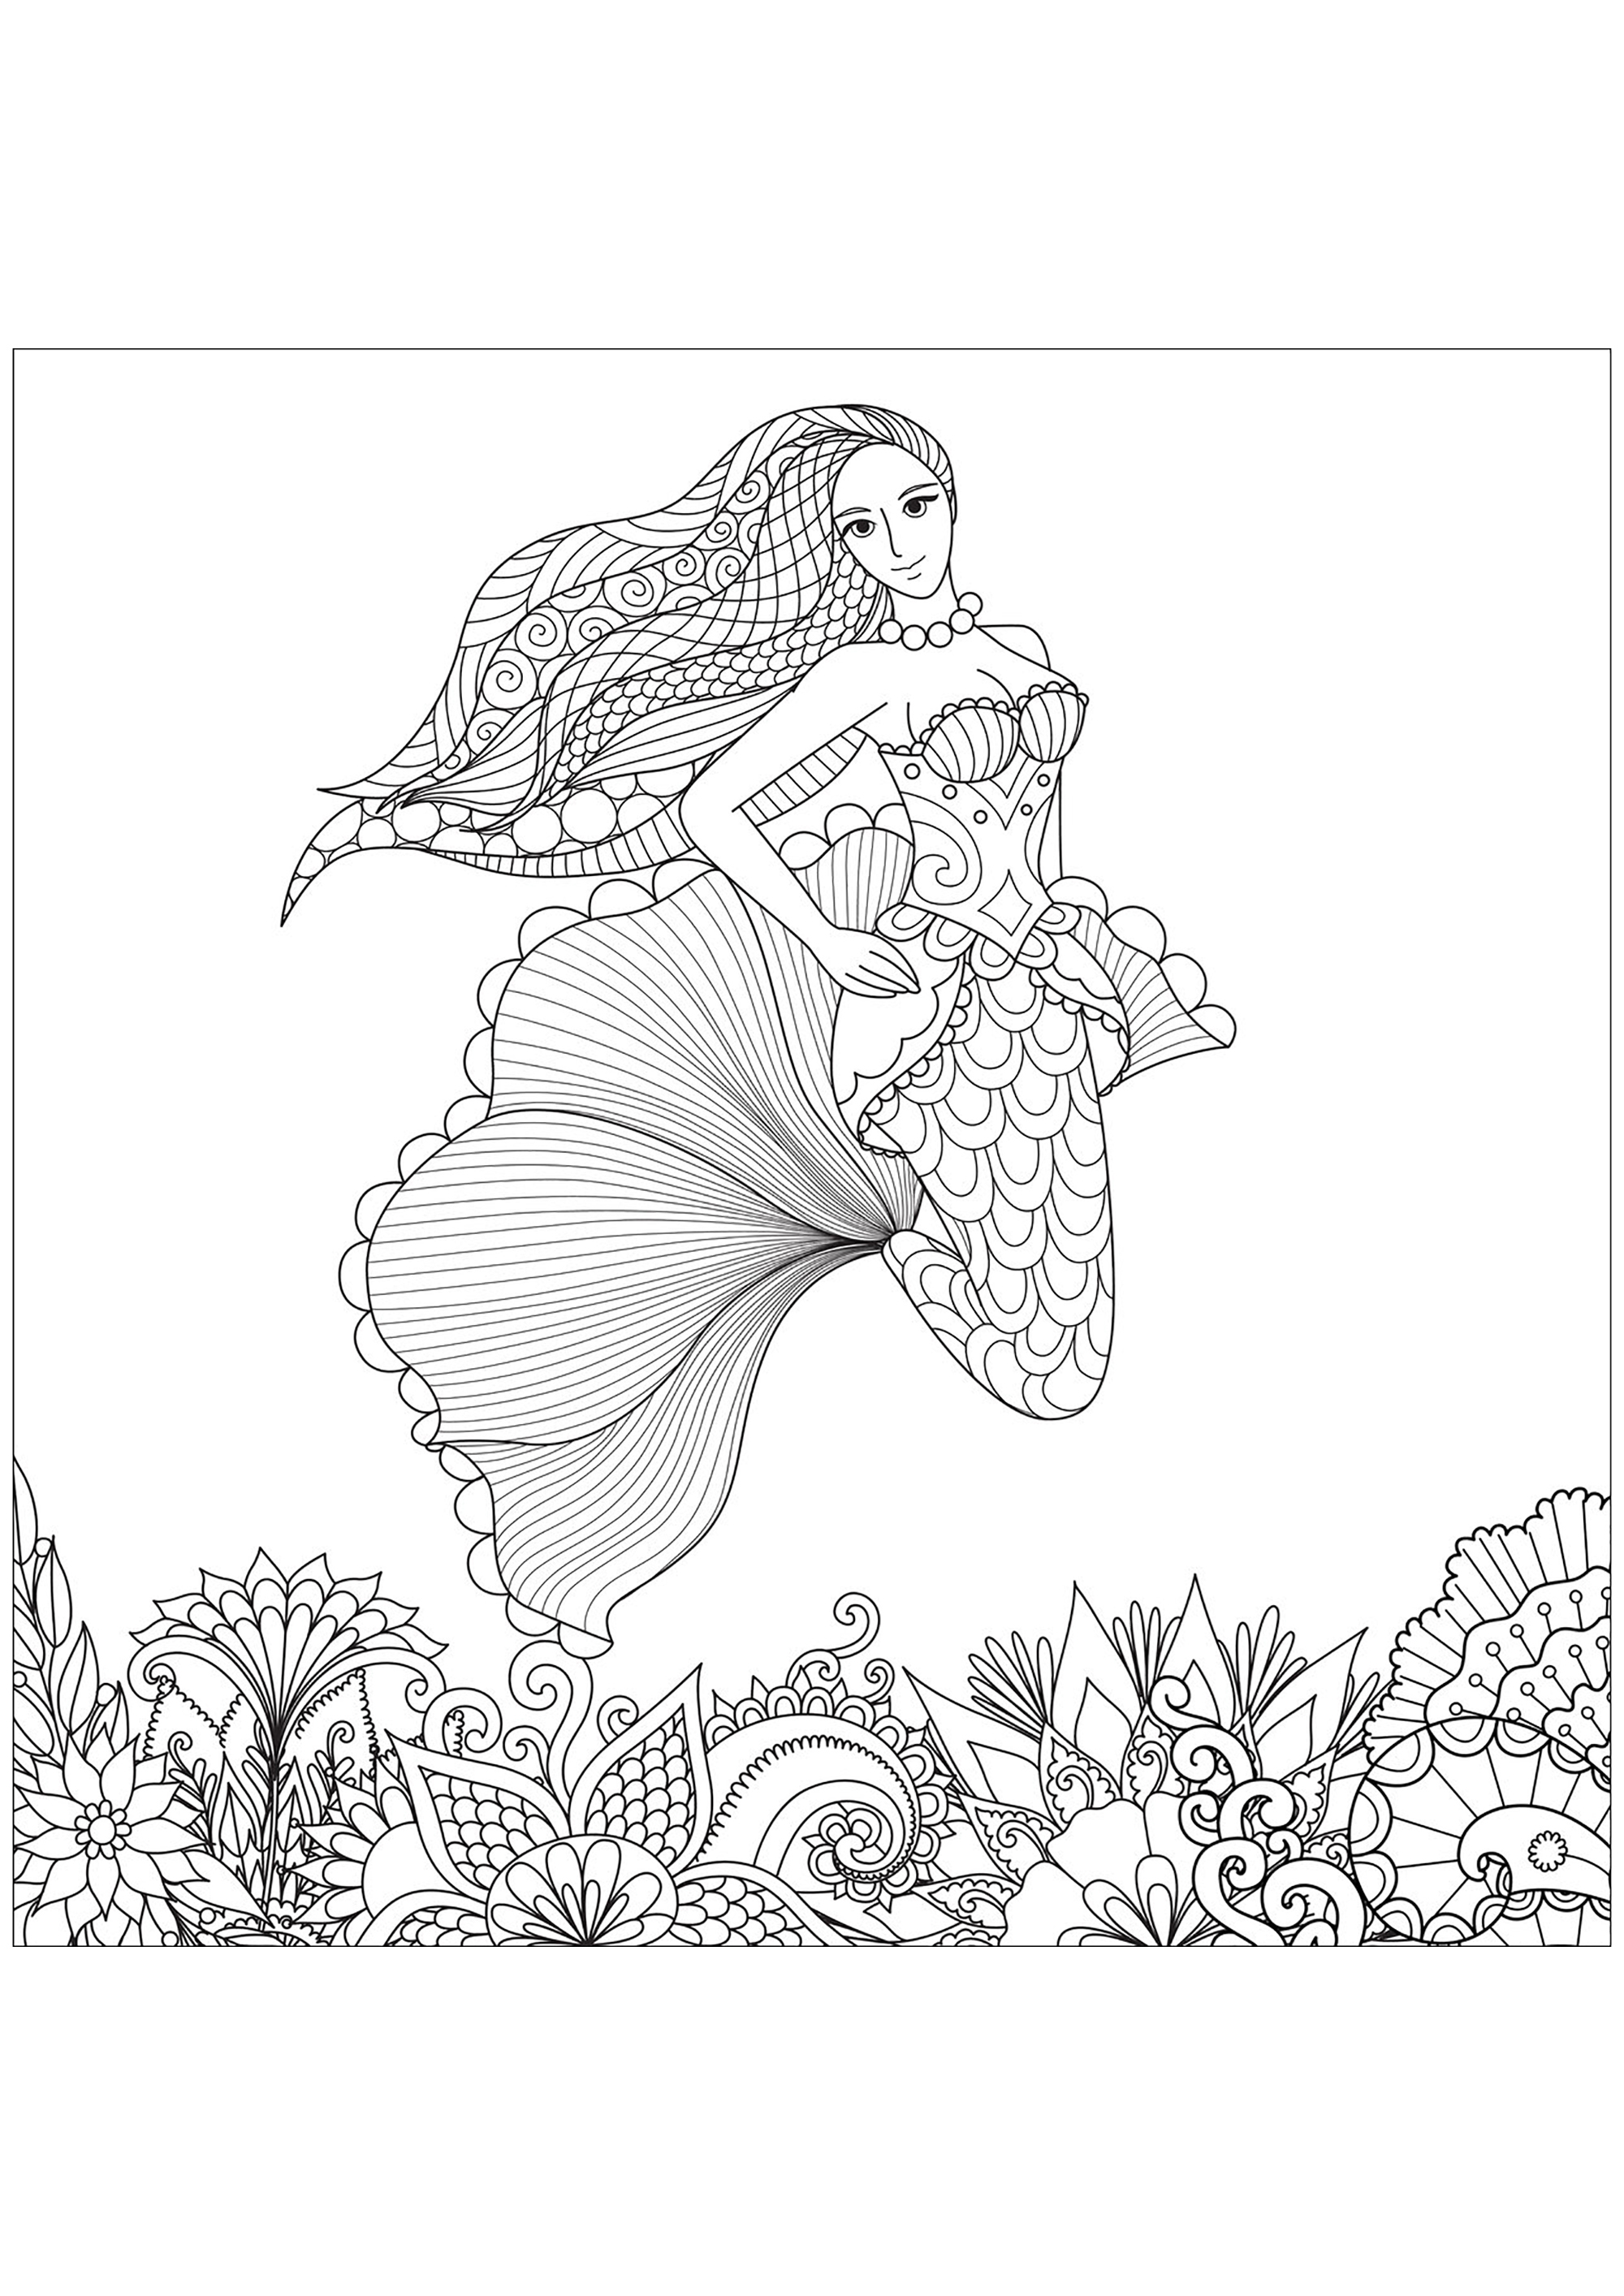 Hübsche Meerjungfrau mit schönen Mustern im Haar und mit Zentangles gezeichnetem Meeresboden, Quelle : 123rf   Künstler : Bimdeedee